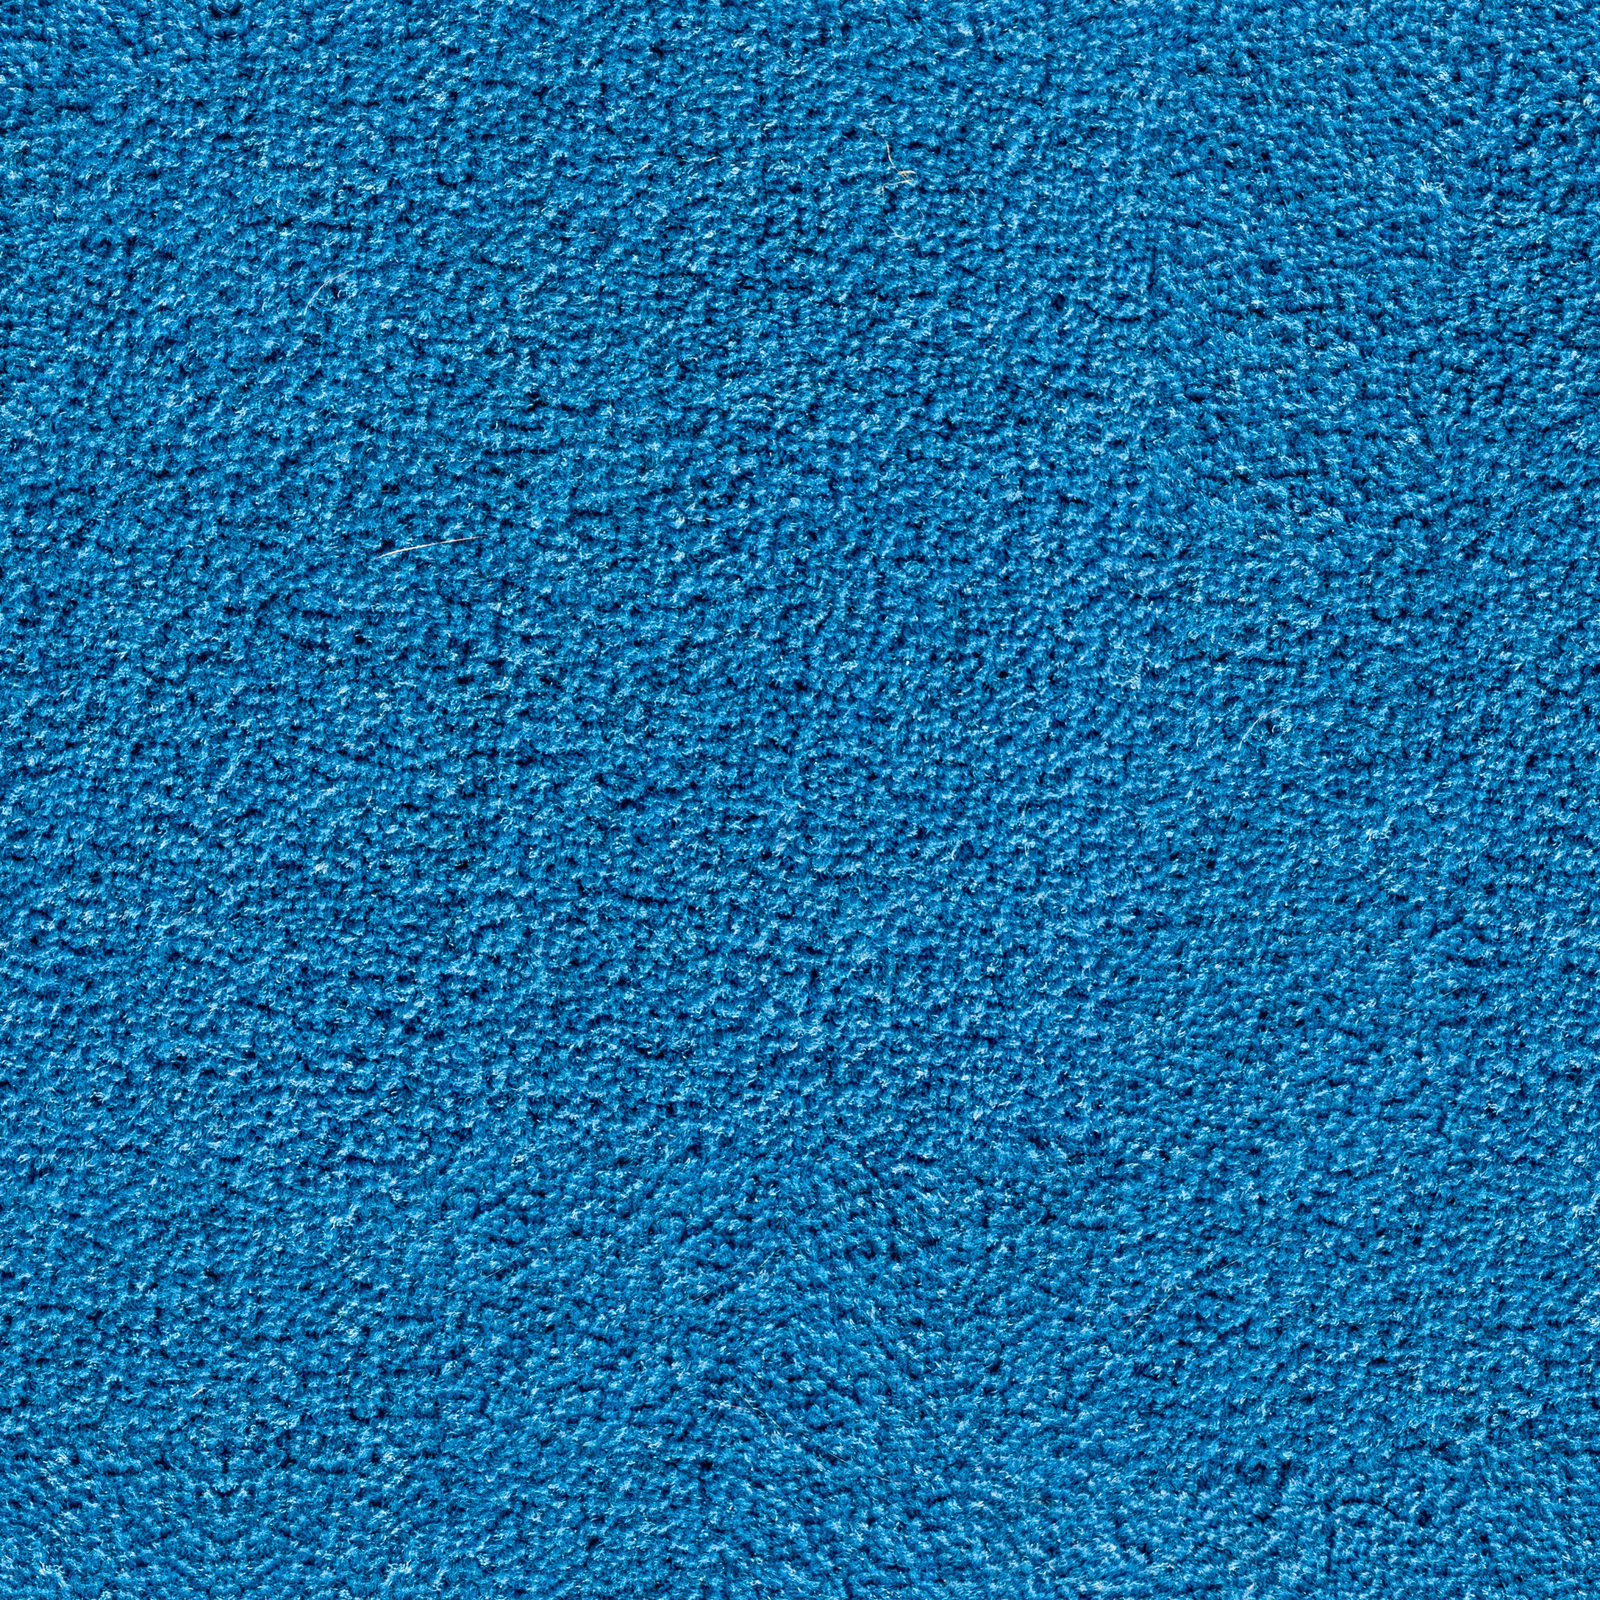 Light Blue Carpet Texture | Hot Sex Picture